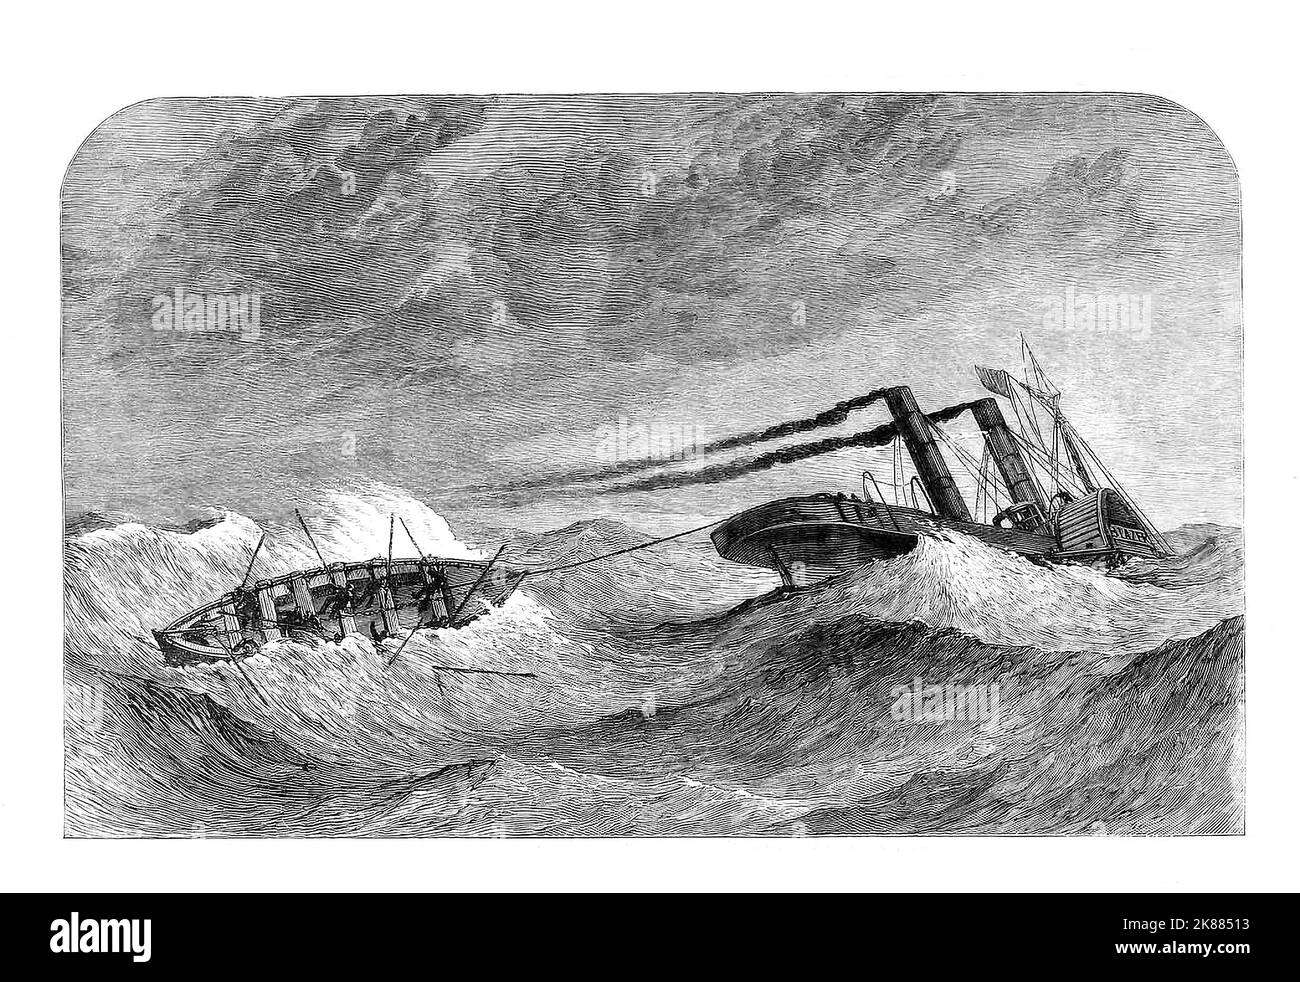 Der Untergang der PS Lelia, einem Dampfer, das während des amerikanischen Bürgerkrieges für die Konföderierten gebaut wurde. Im Januar 1865 verließ sie den River Mersey mit einer Besatzung von Liverpool und mehreren konföderierten Marineoffizieren und ging nach North Carolina. Sie traf schlechtes Wetter vor Nordwales, große Wellen schlugen ihre Anker los und durch das Deck und schwammen sie. Sie sank in der Nähe des Feuerschiffes Prince vor Great Orme Head. Zwölf Überlebende (von einundfünfzig Besatzungen) erreichten die Sicherheit des Feuerschiffes. Das Liverpool Lifeboat ging zur Szene, wurde aber von Wellen überschwemmt, mit dem Verlust von sieben seiner 11 Besatzung. Stockfoto